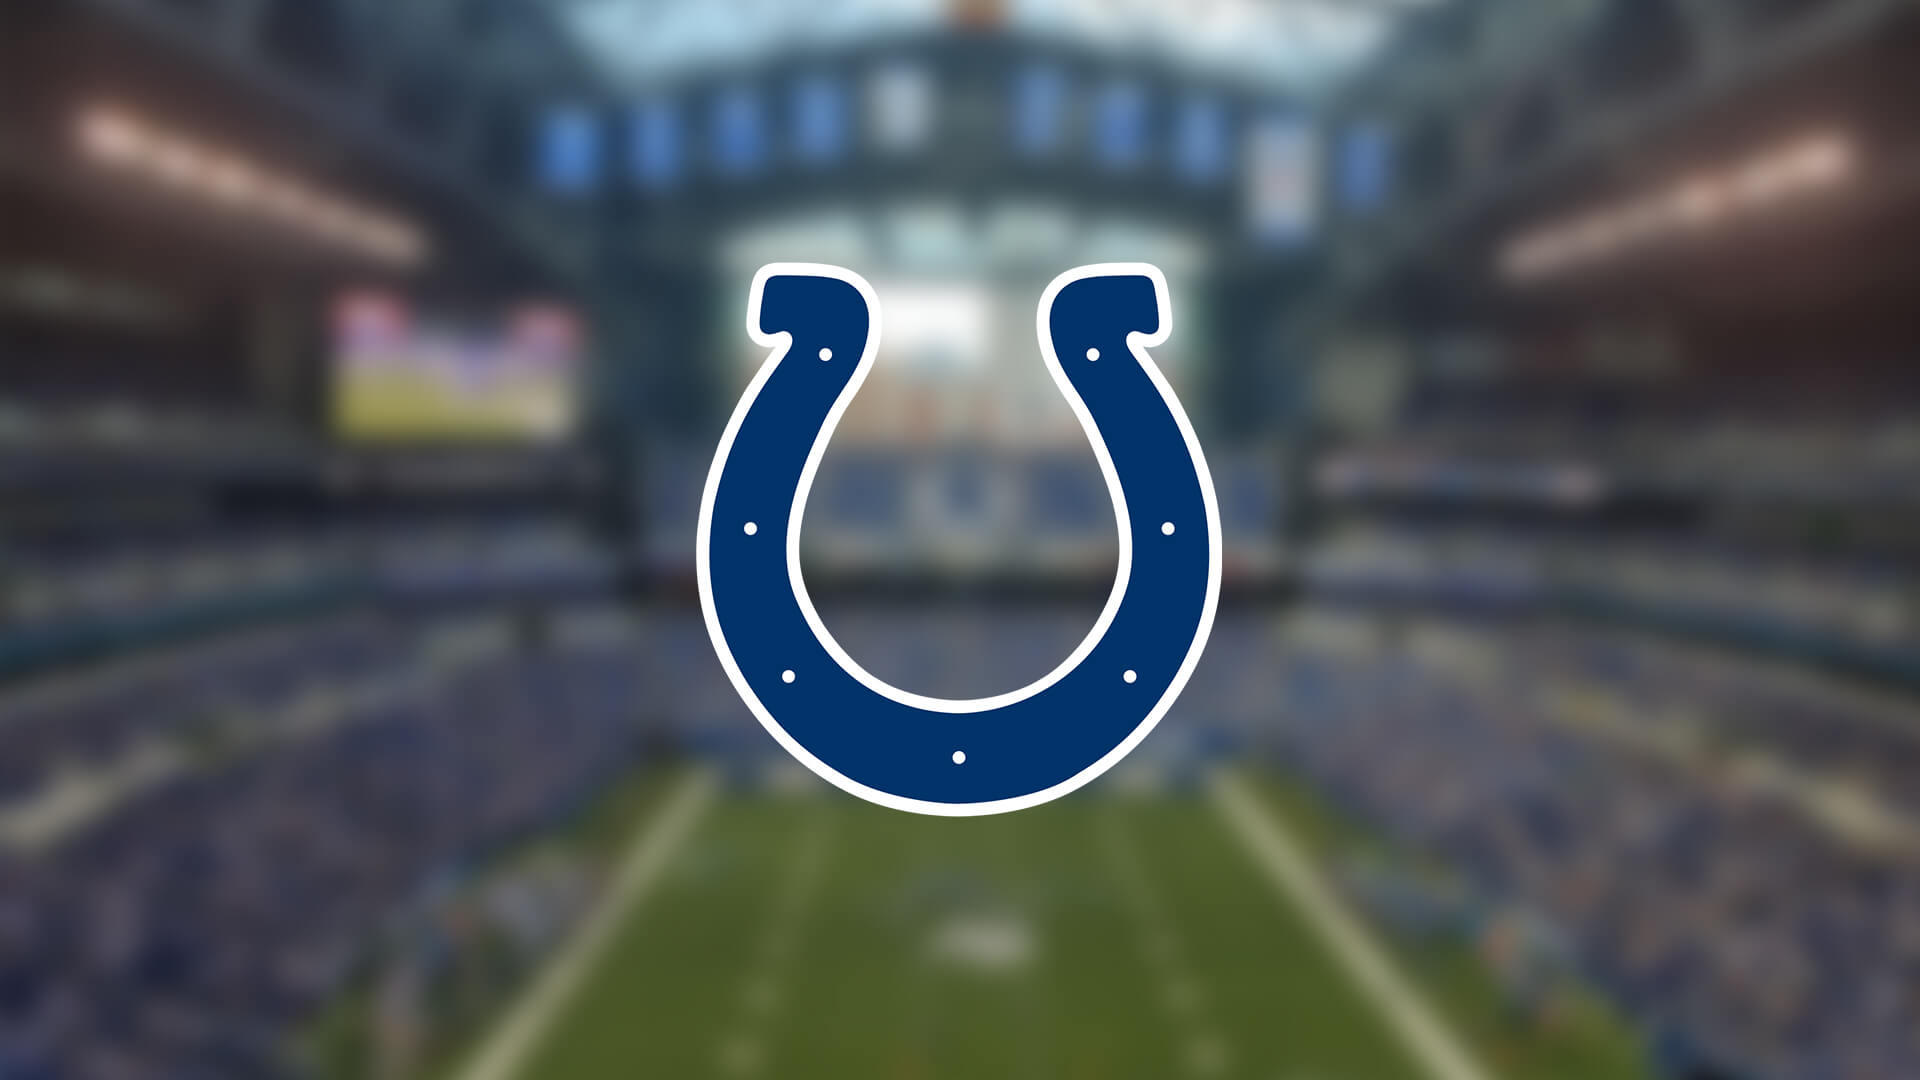 Indianapolis Colts Antrenman Tesisini Açtı | Korumalı Futbol Türkiye